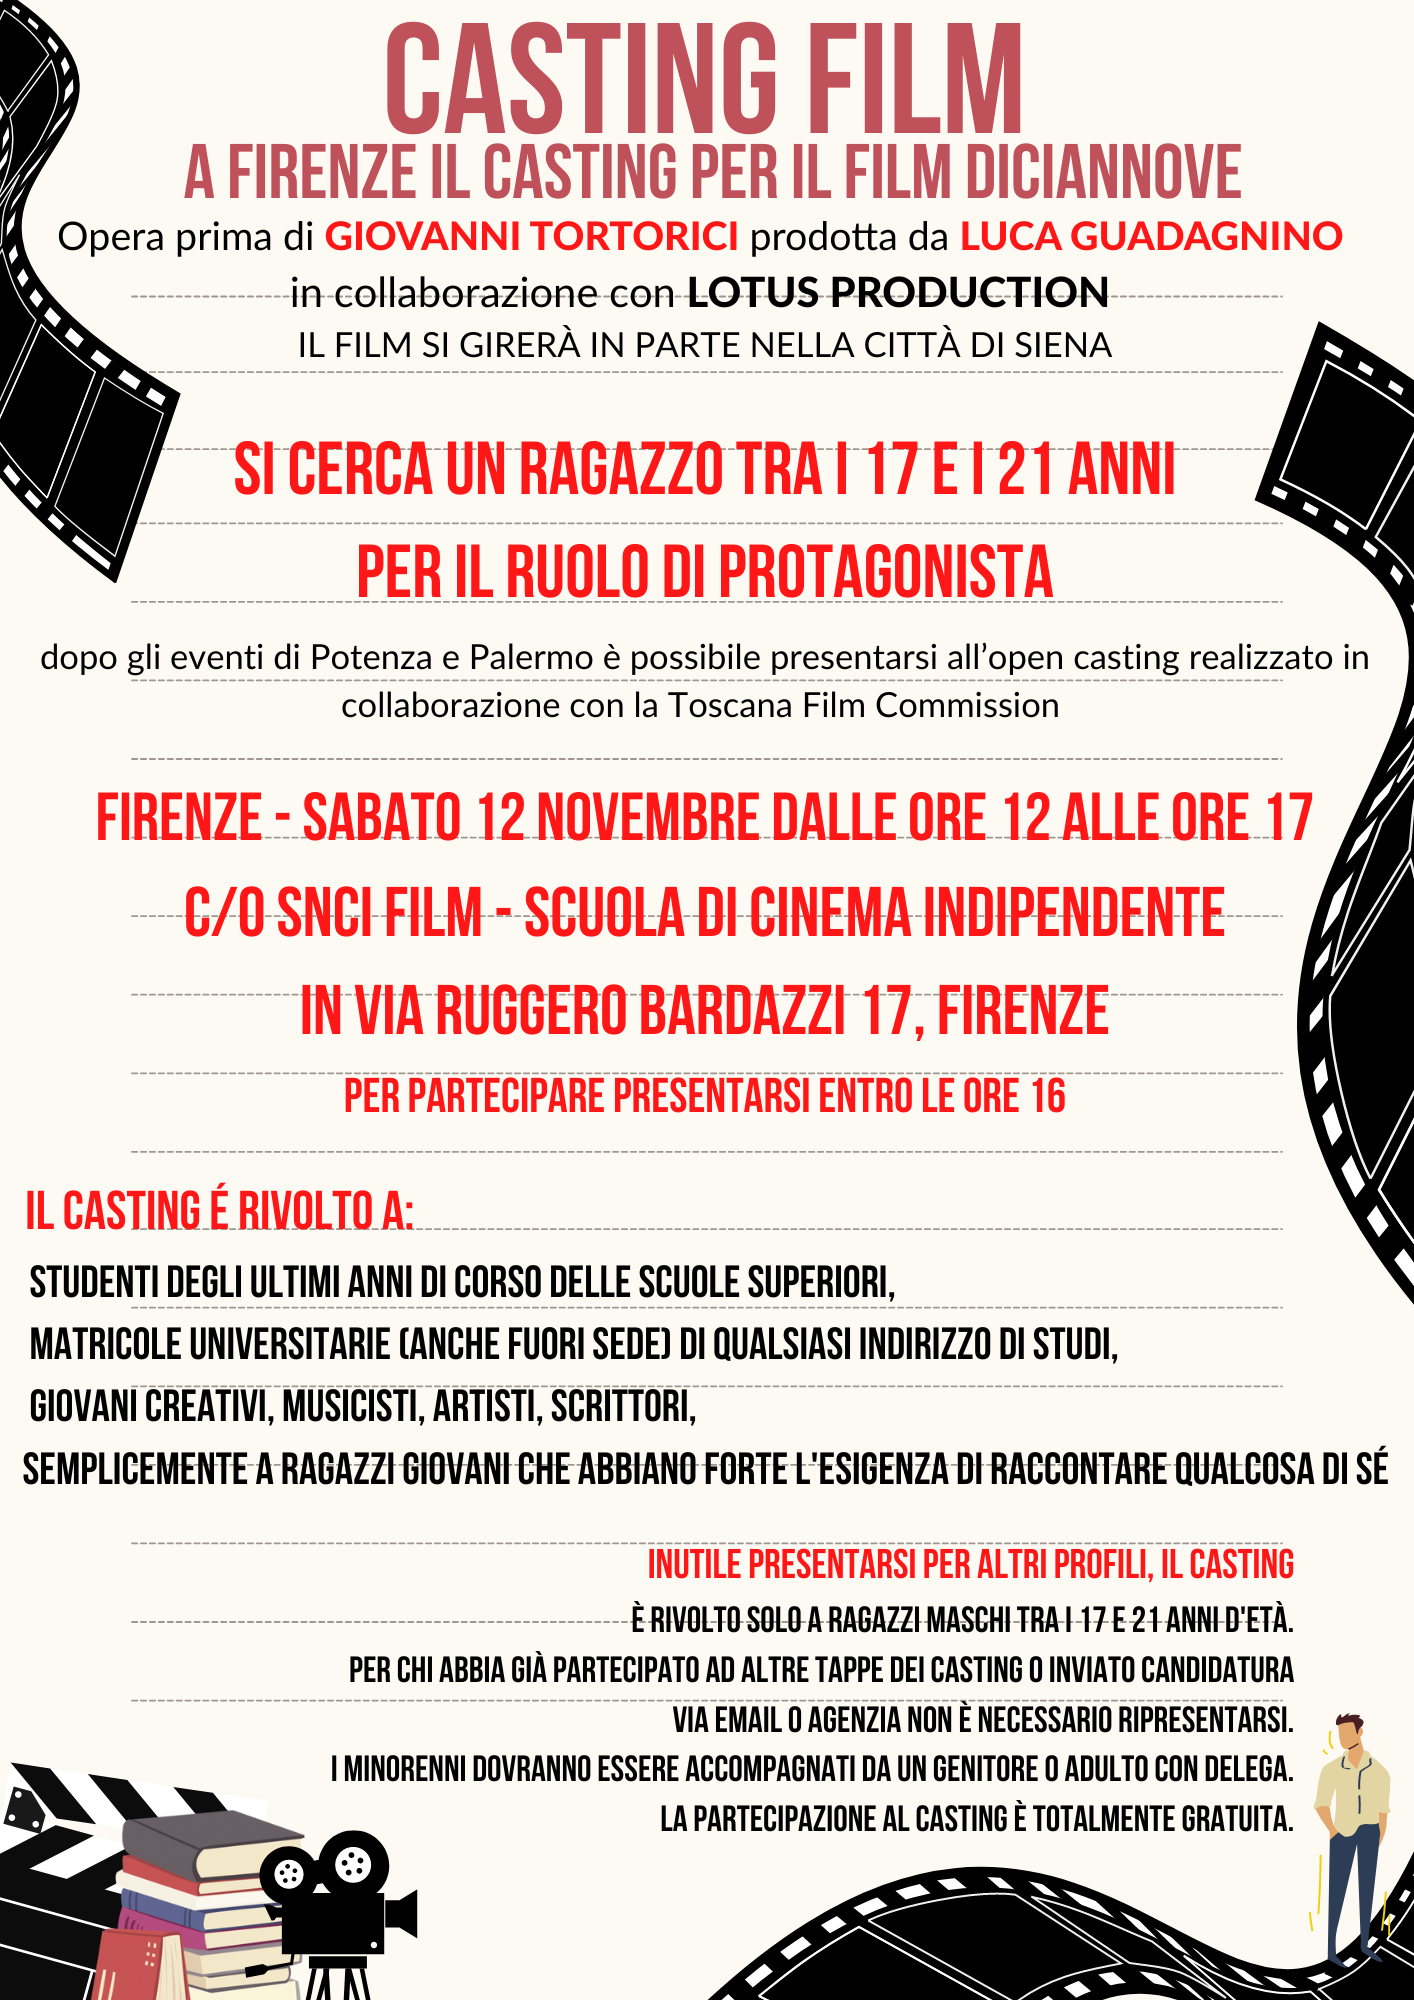 Casting a Firenze per il film  “Diciannove” di Giovanni Tortorici